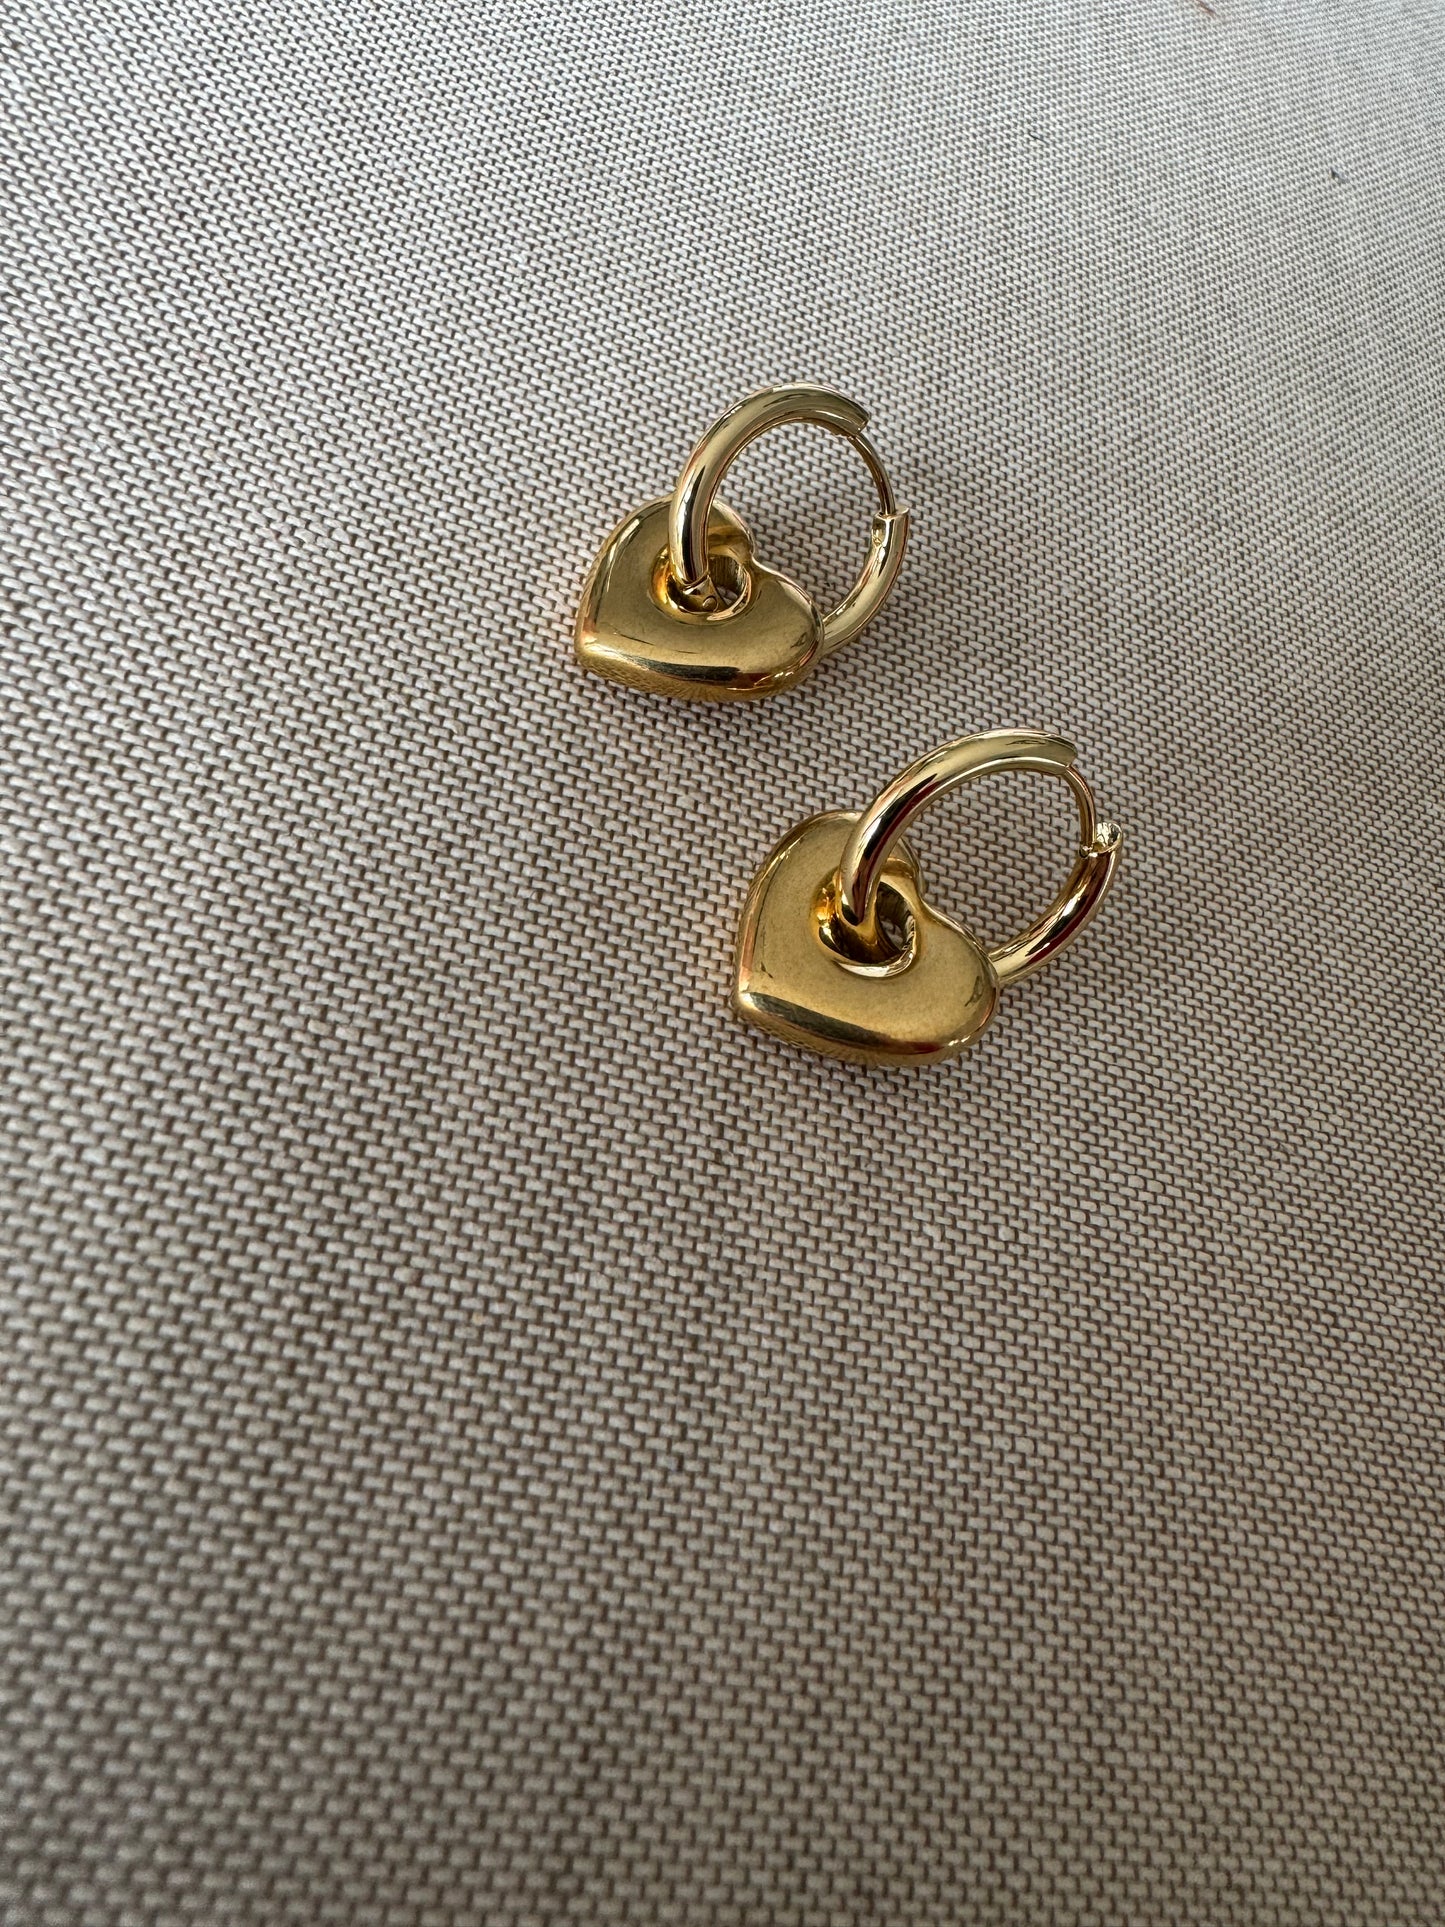 Heart Hoop earrings in gold